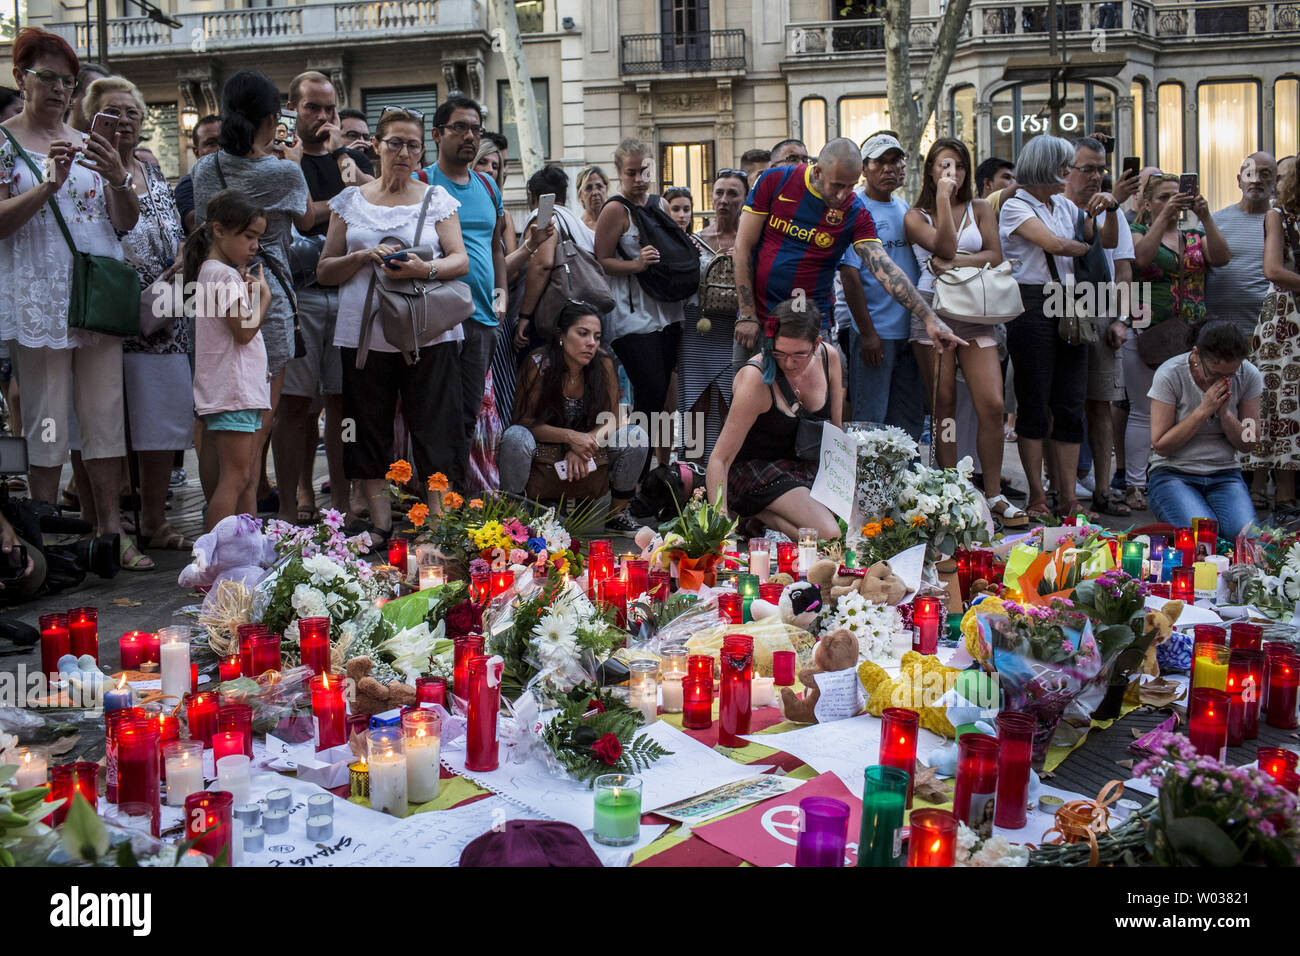 Menschen stehen neben Blumen, Kerzen und andere Gegenstände auf die Font de Canaletes in Barcelona, als Sie erinnert an die Opfer des Barcelona Terroranschlag bezahlen, einen Tag nach dem van in die Menge gepflügt, tötete 14 Menschen und über 100 wurden verletzt, am 18. August 2017. Foto von Angel Garcia/UPI Stockfoto